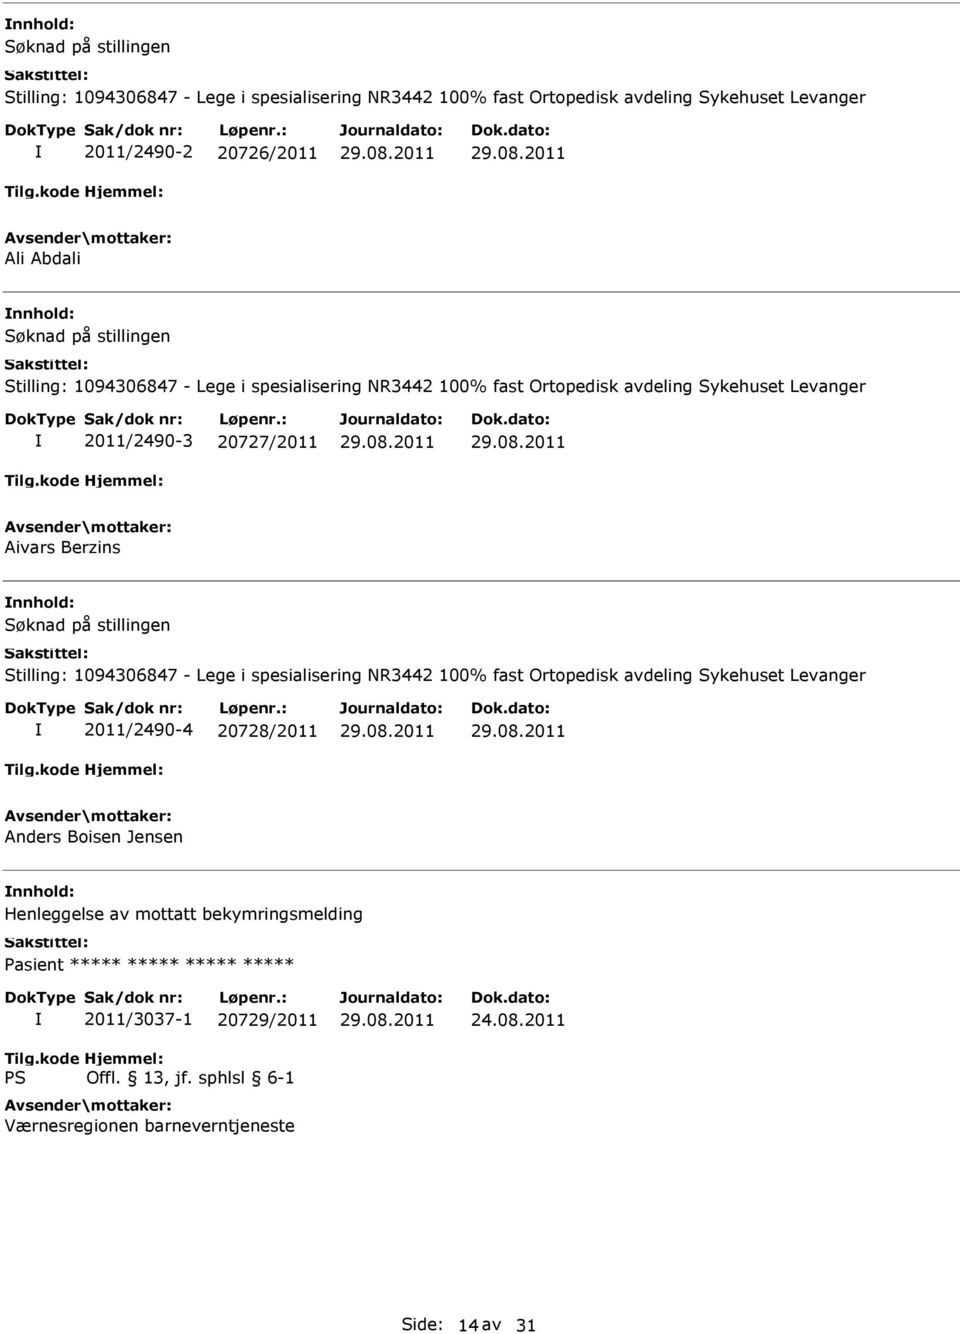 Stilling: 1094306847 - Lege i spesialisering NR3442 100% fast Ortopedisk avdeling Sykehuset Levanger 2011/2490-4 20728/2011 Anders Boisen